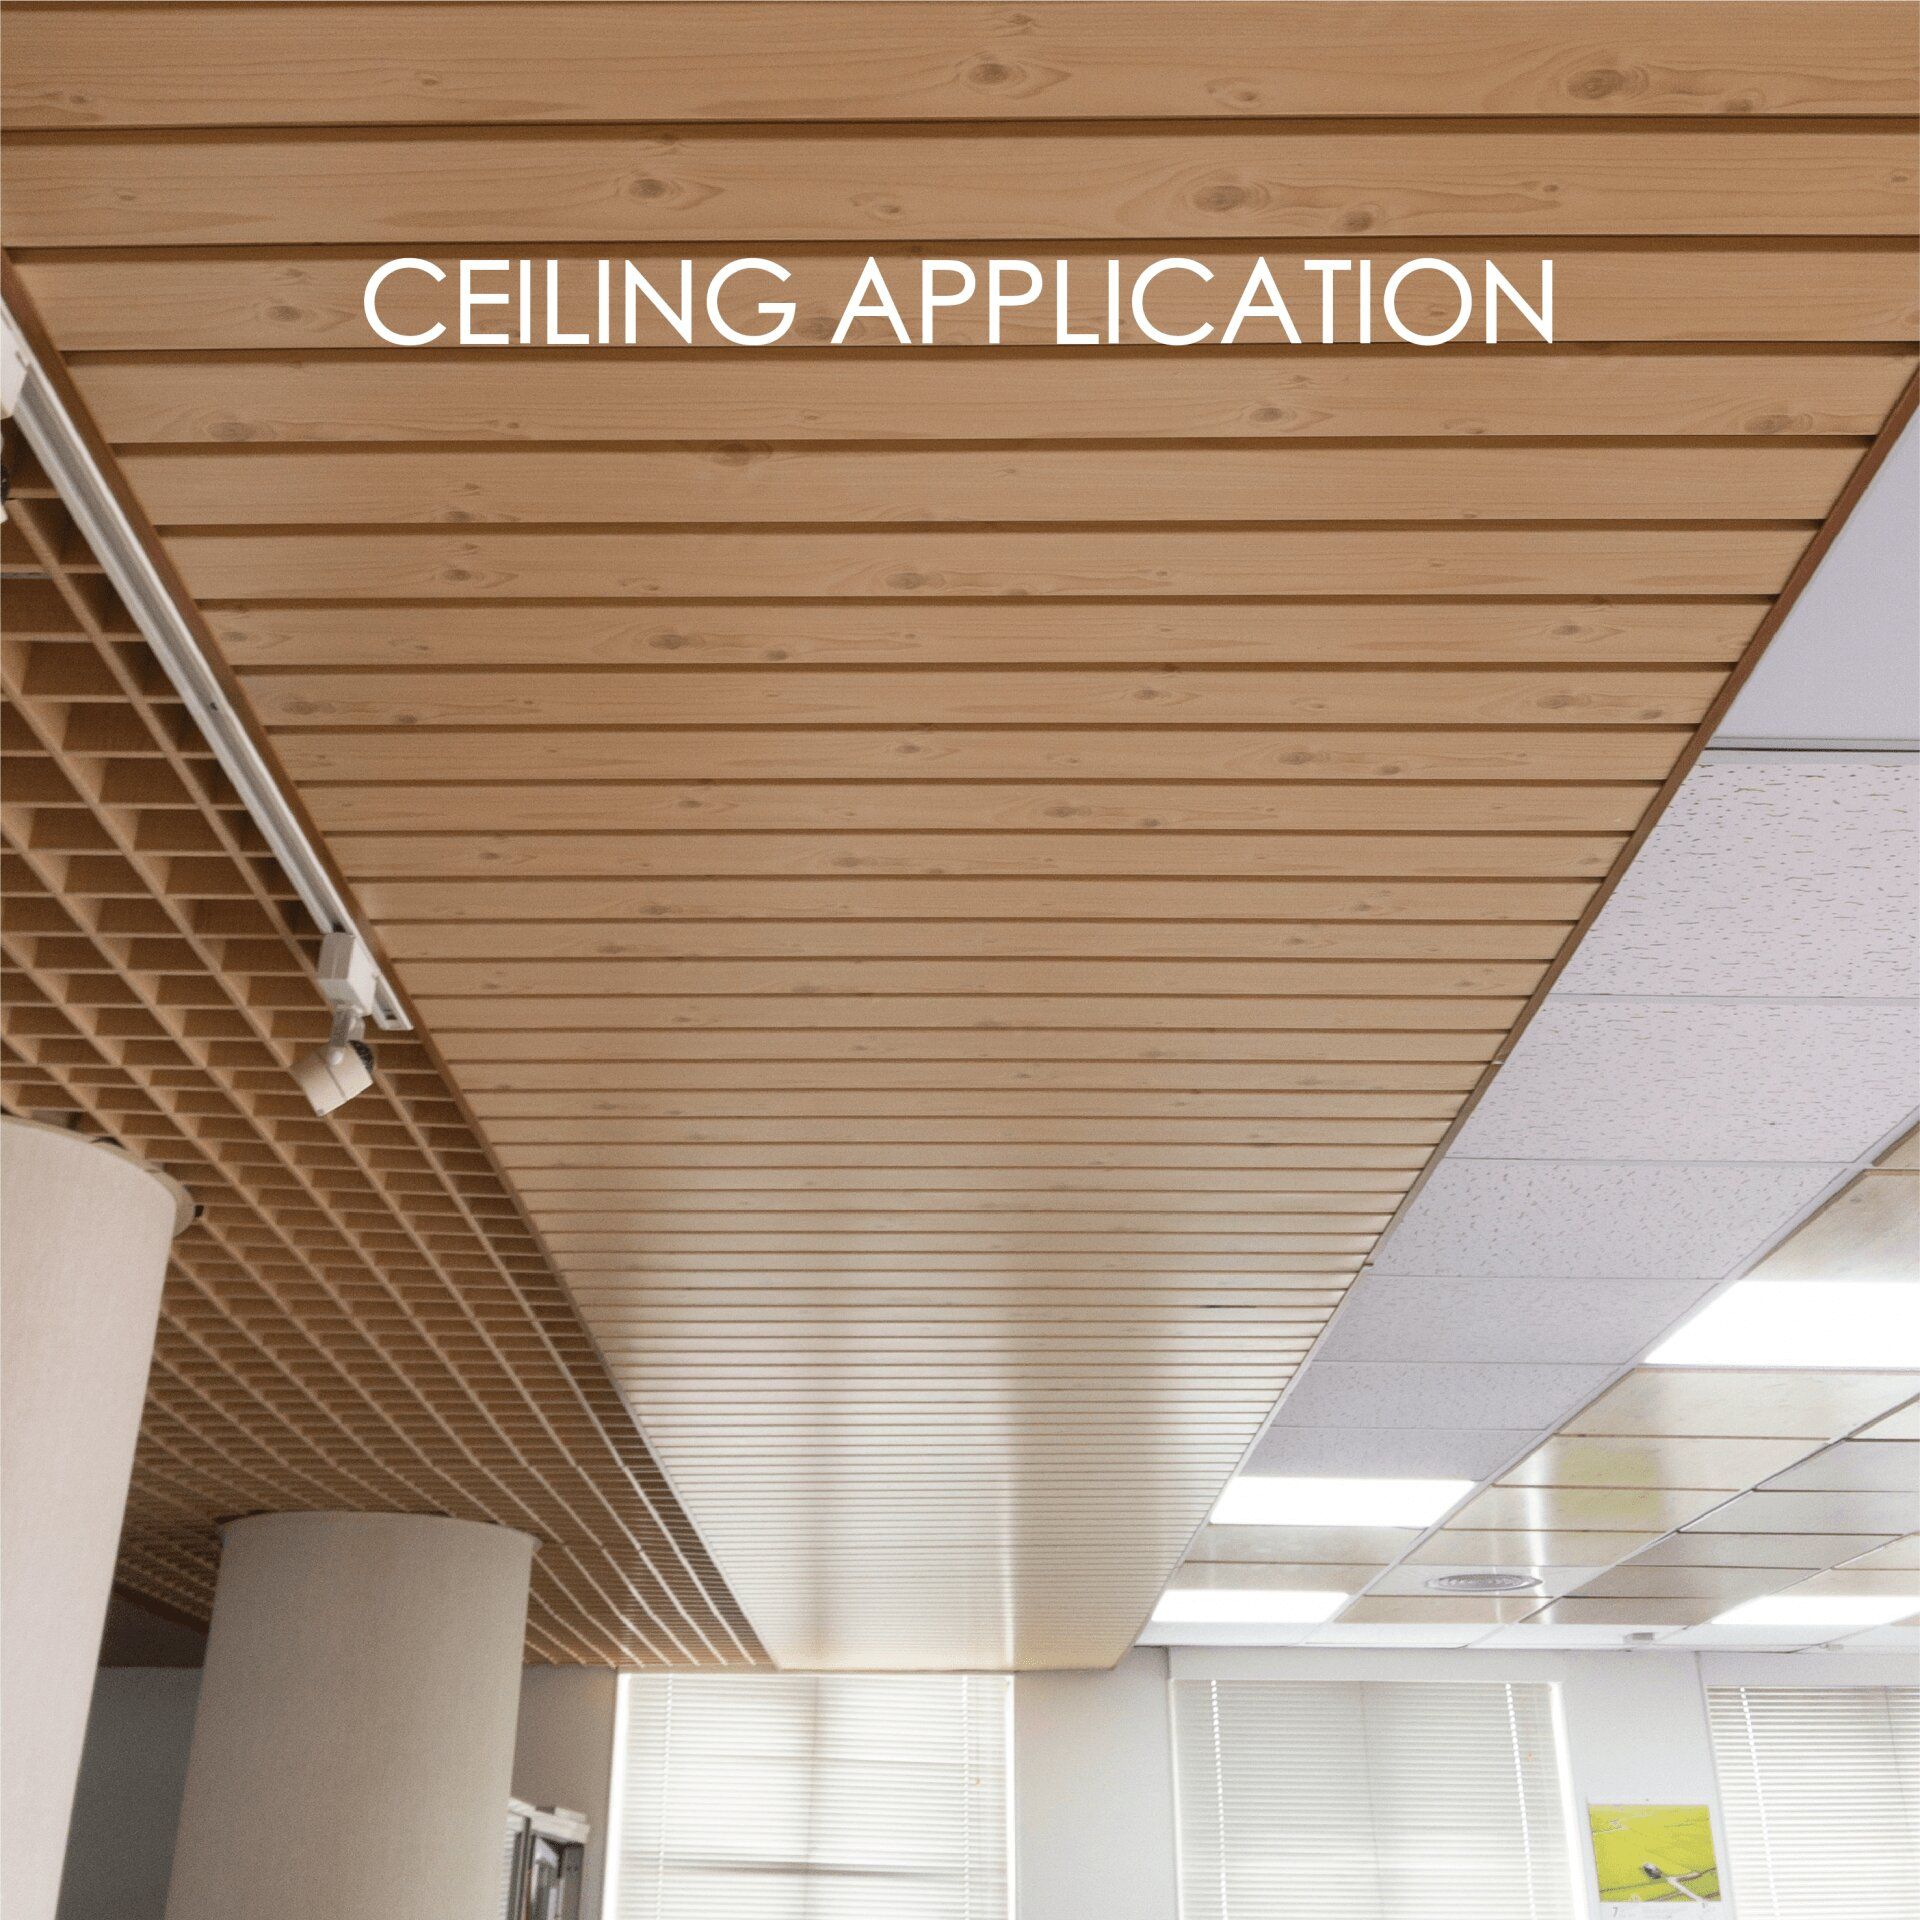 Utiliser du métal laminé pour fabriquer des plafonds ajoute de la décoration et de la durabilité